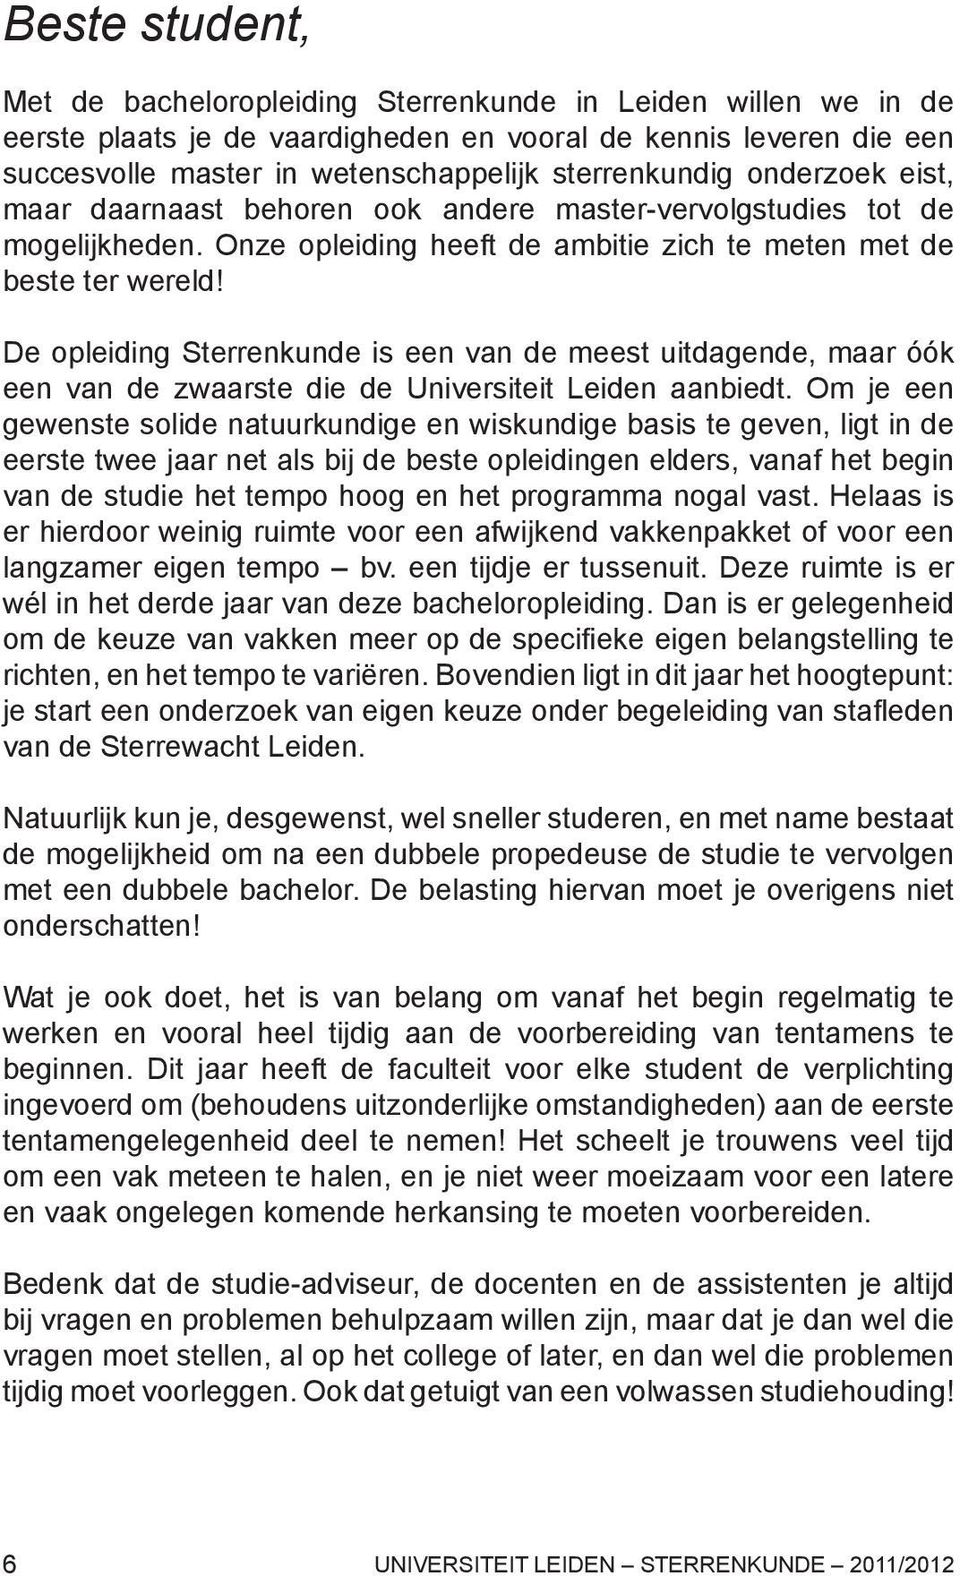 De opleiding Sterrenkunde is een van de meest uitdagende, maar óók een van de zwaarste die de Universiteit Leiden aanbiedt.